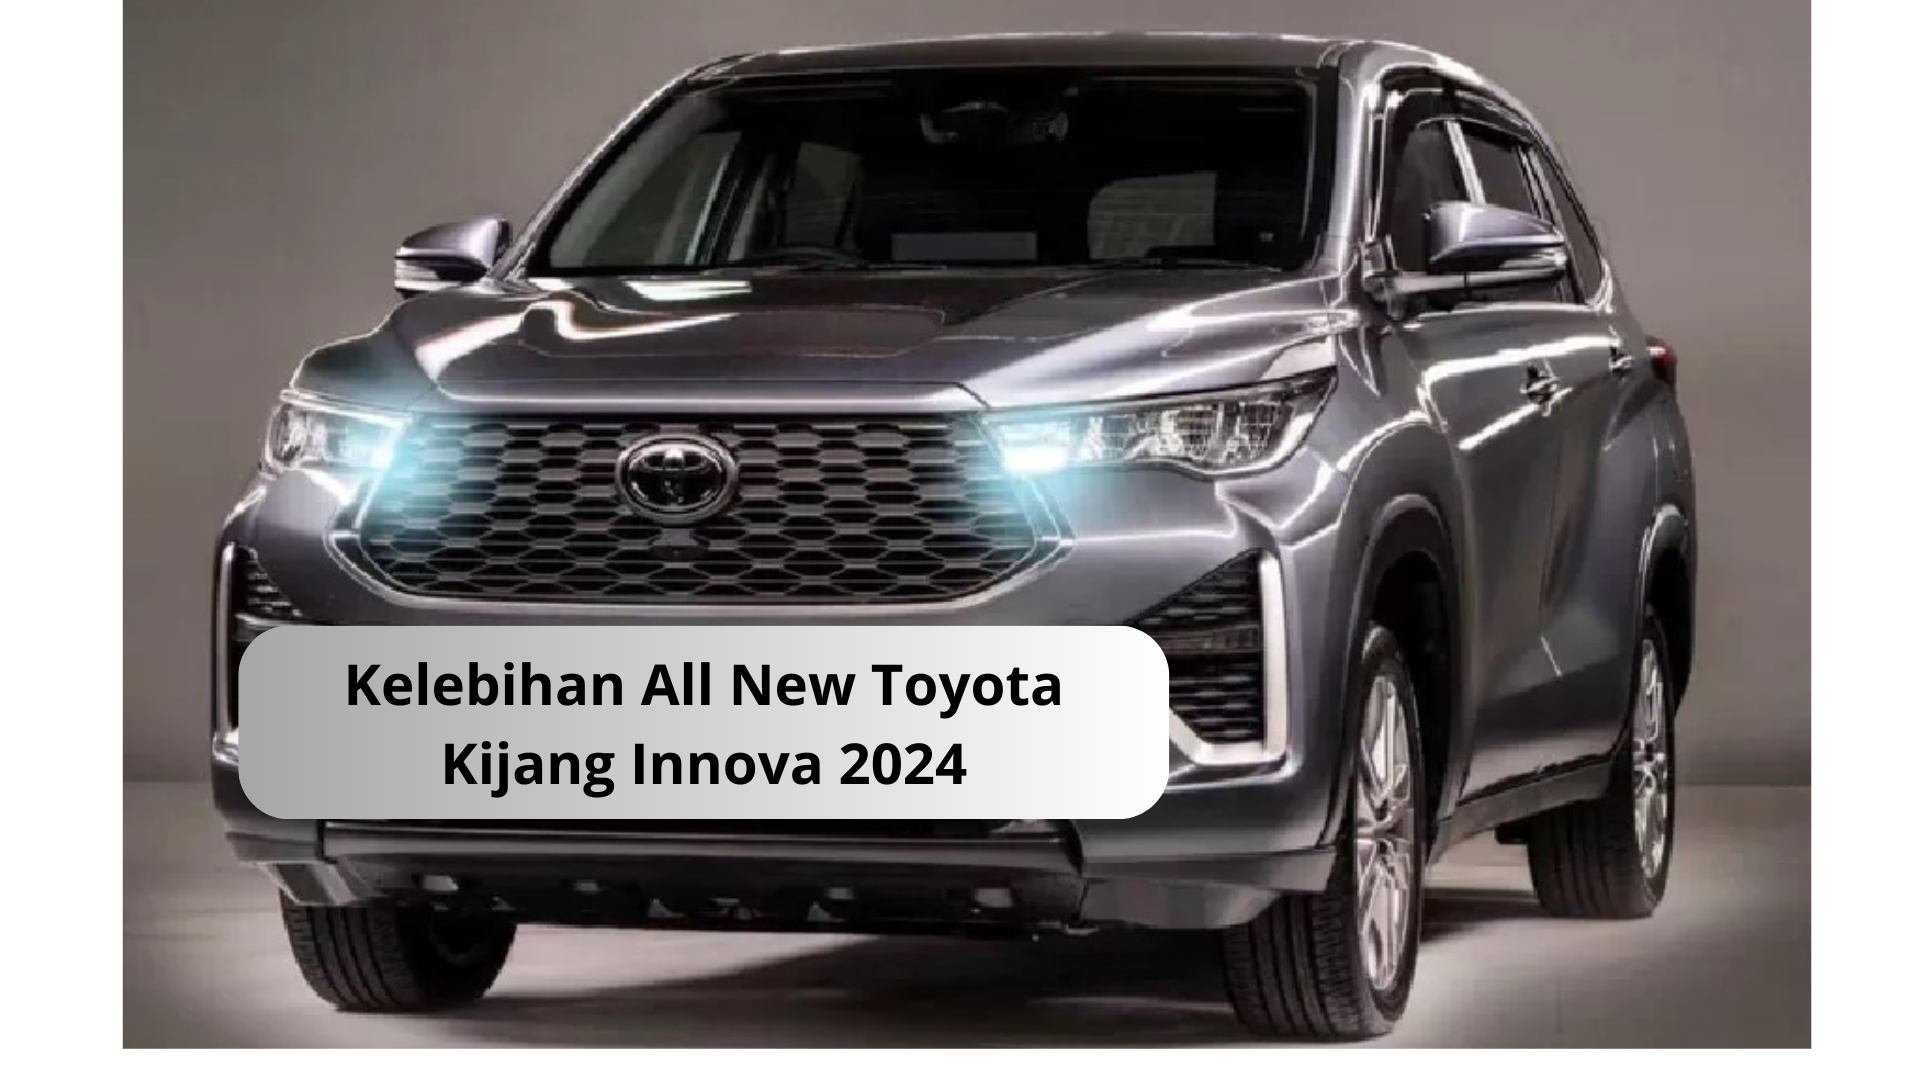 Kelebihan All New Toyota Kijang Innova 2024 yang Jadi Favorit Keluarga, Canggih dengan Fitur Kontrol Traksi